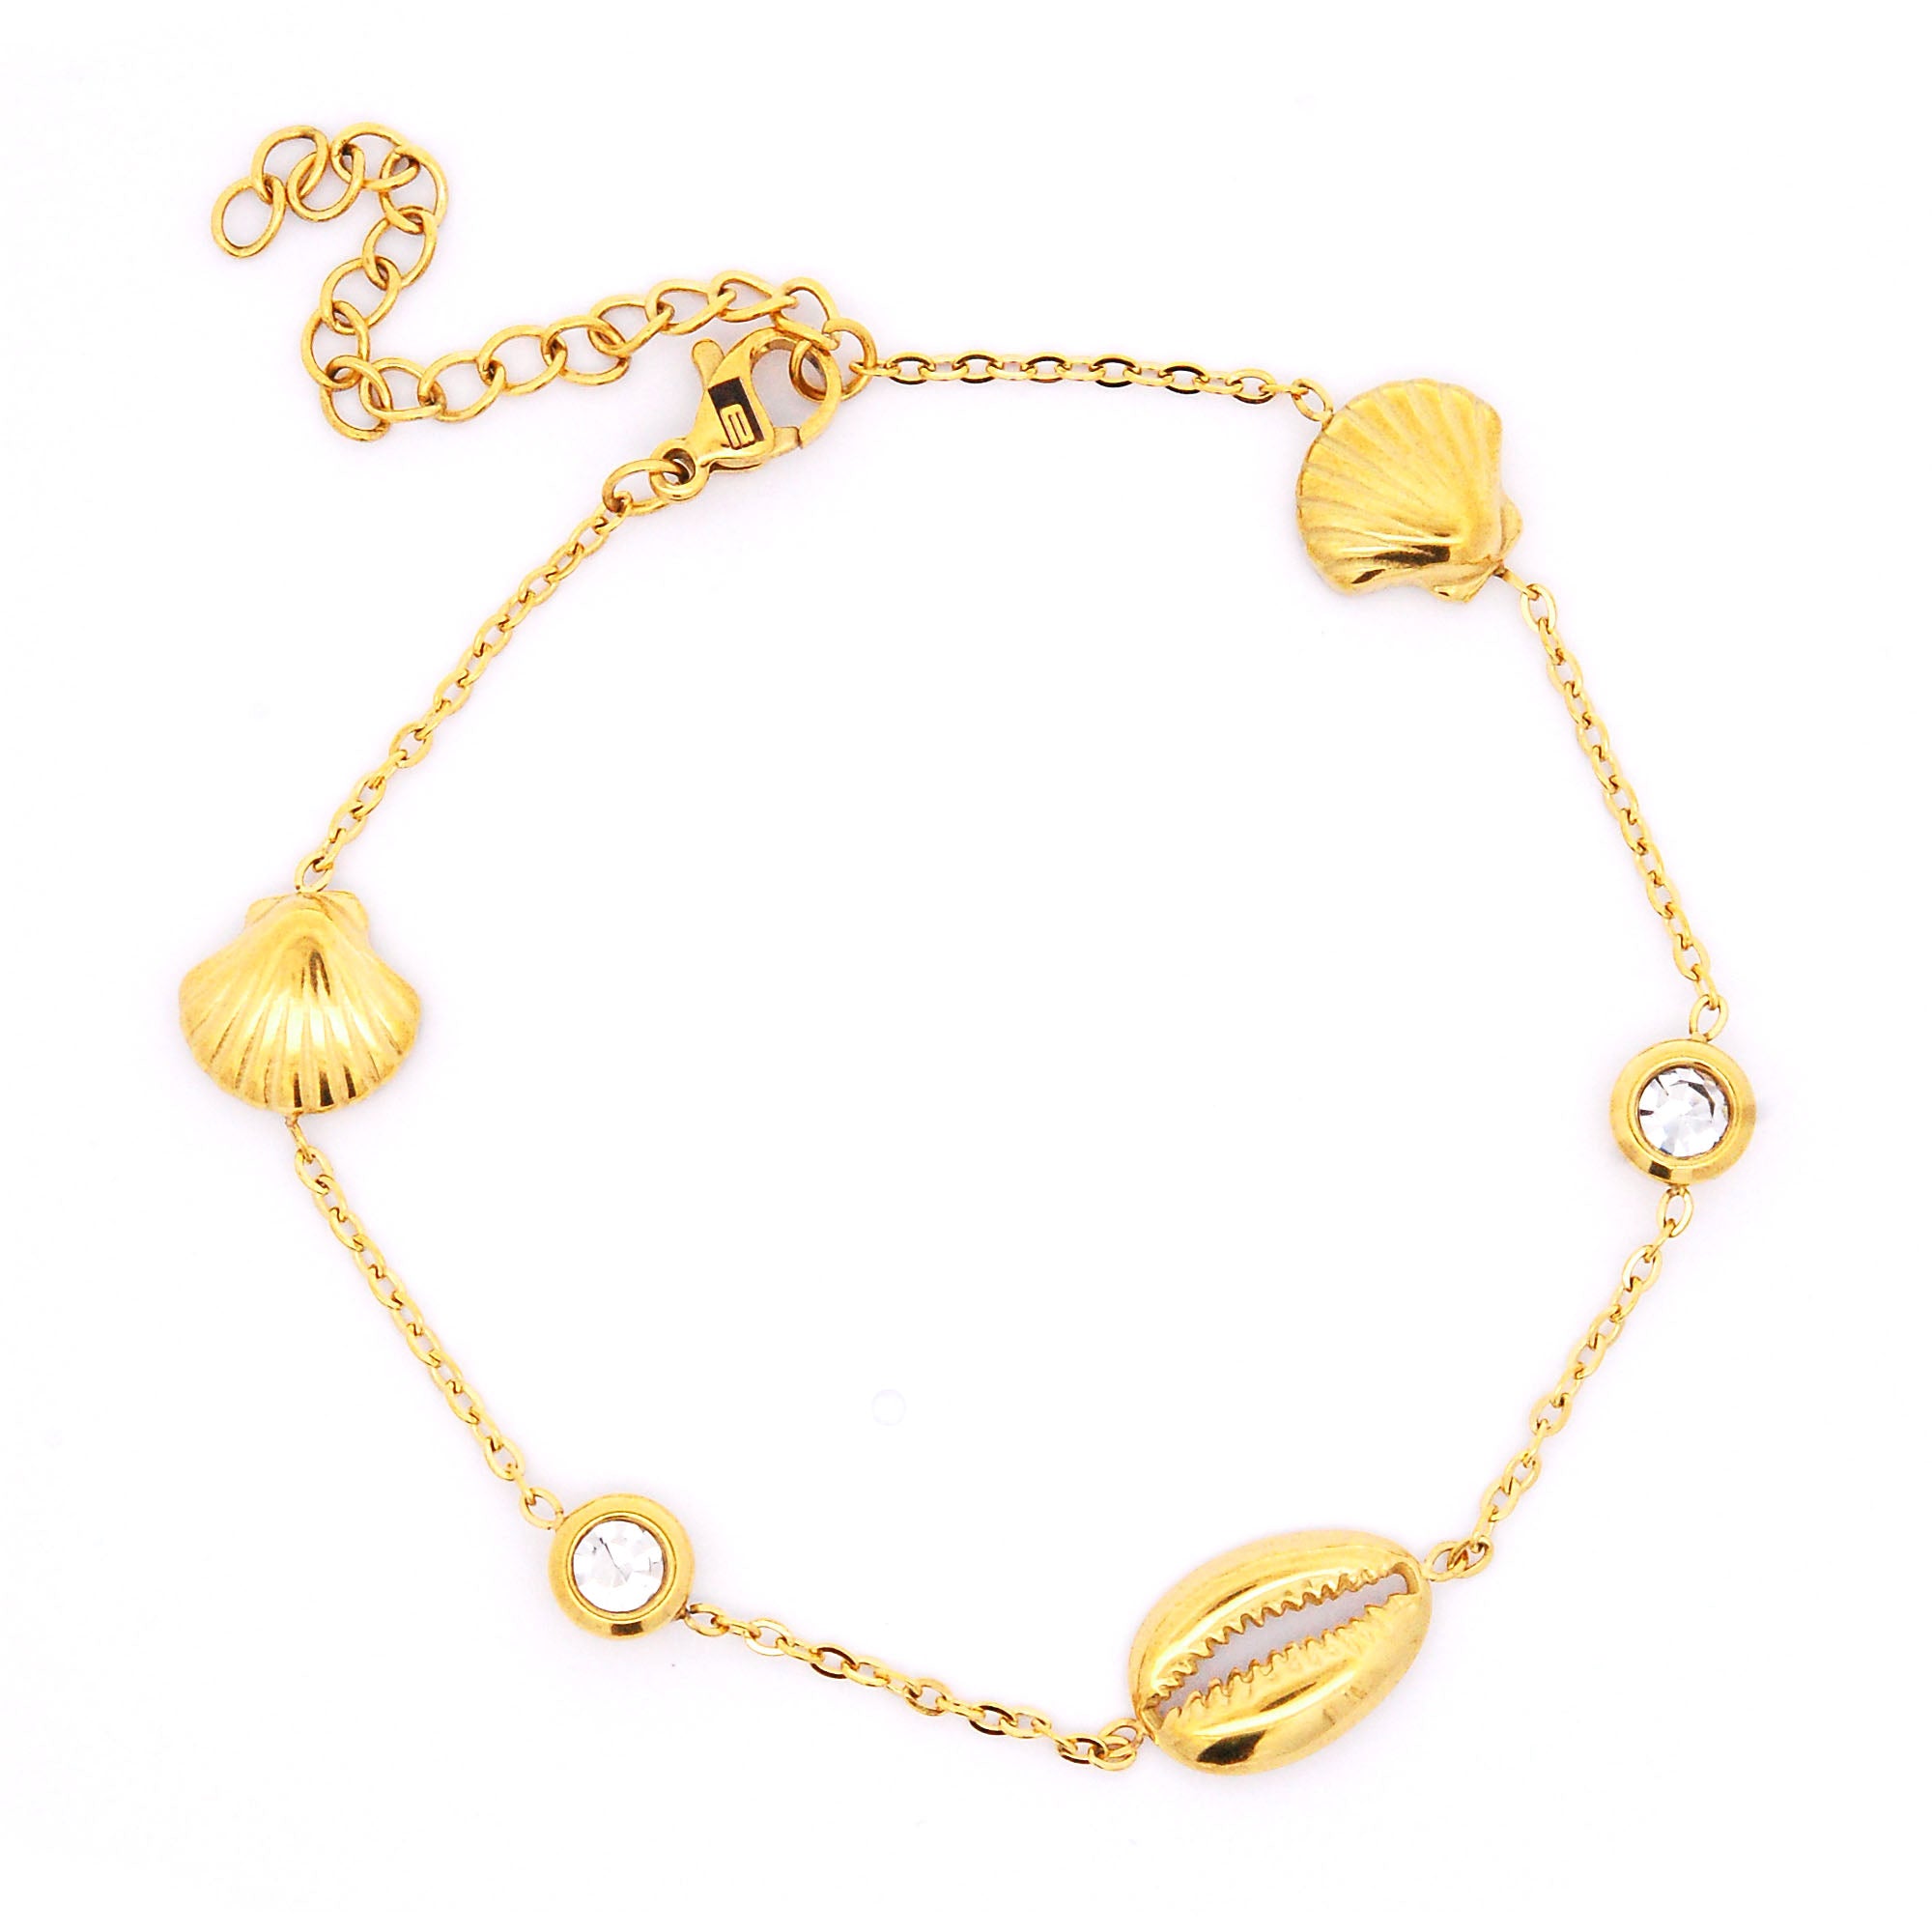 ESBL 7641: Gold-Plated Delicate Crystals & Seashells Bracelet